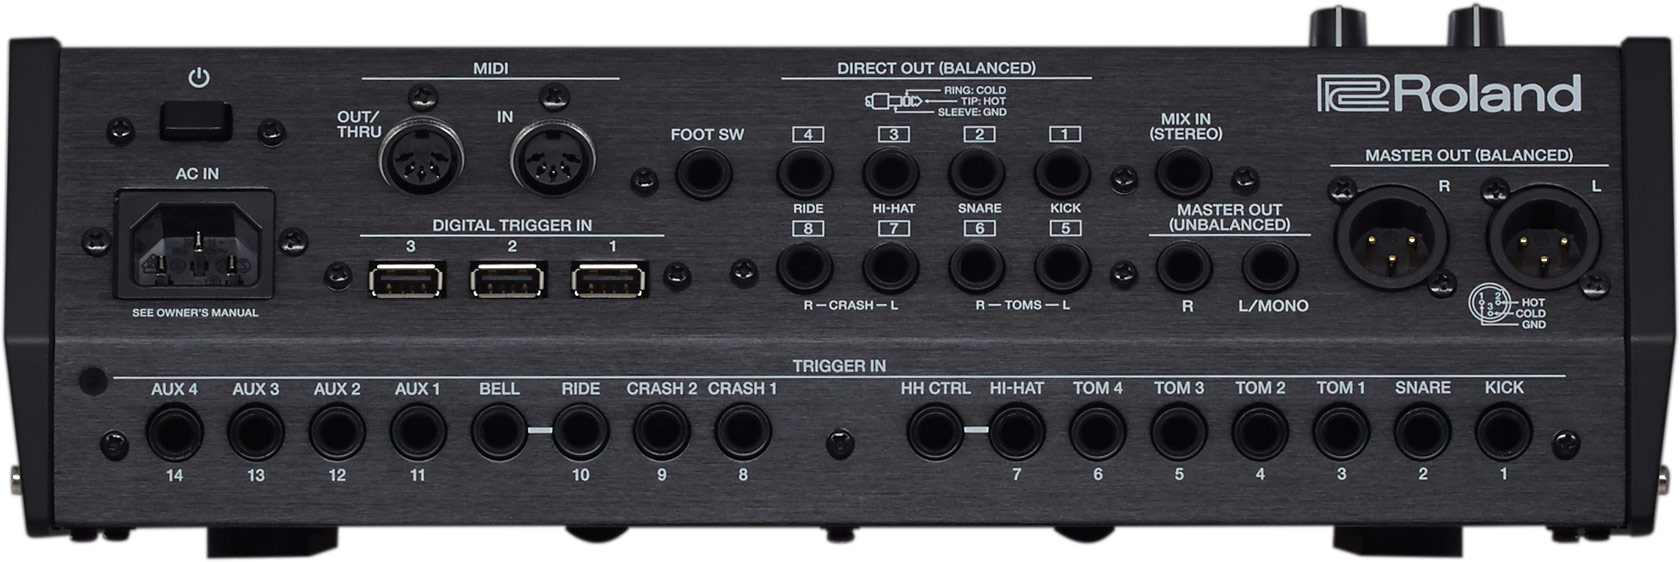 Roland TD-50X Sound Module E-Drum